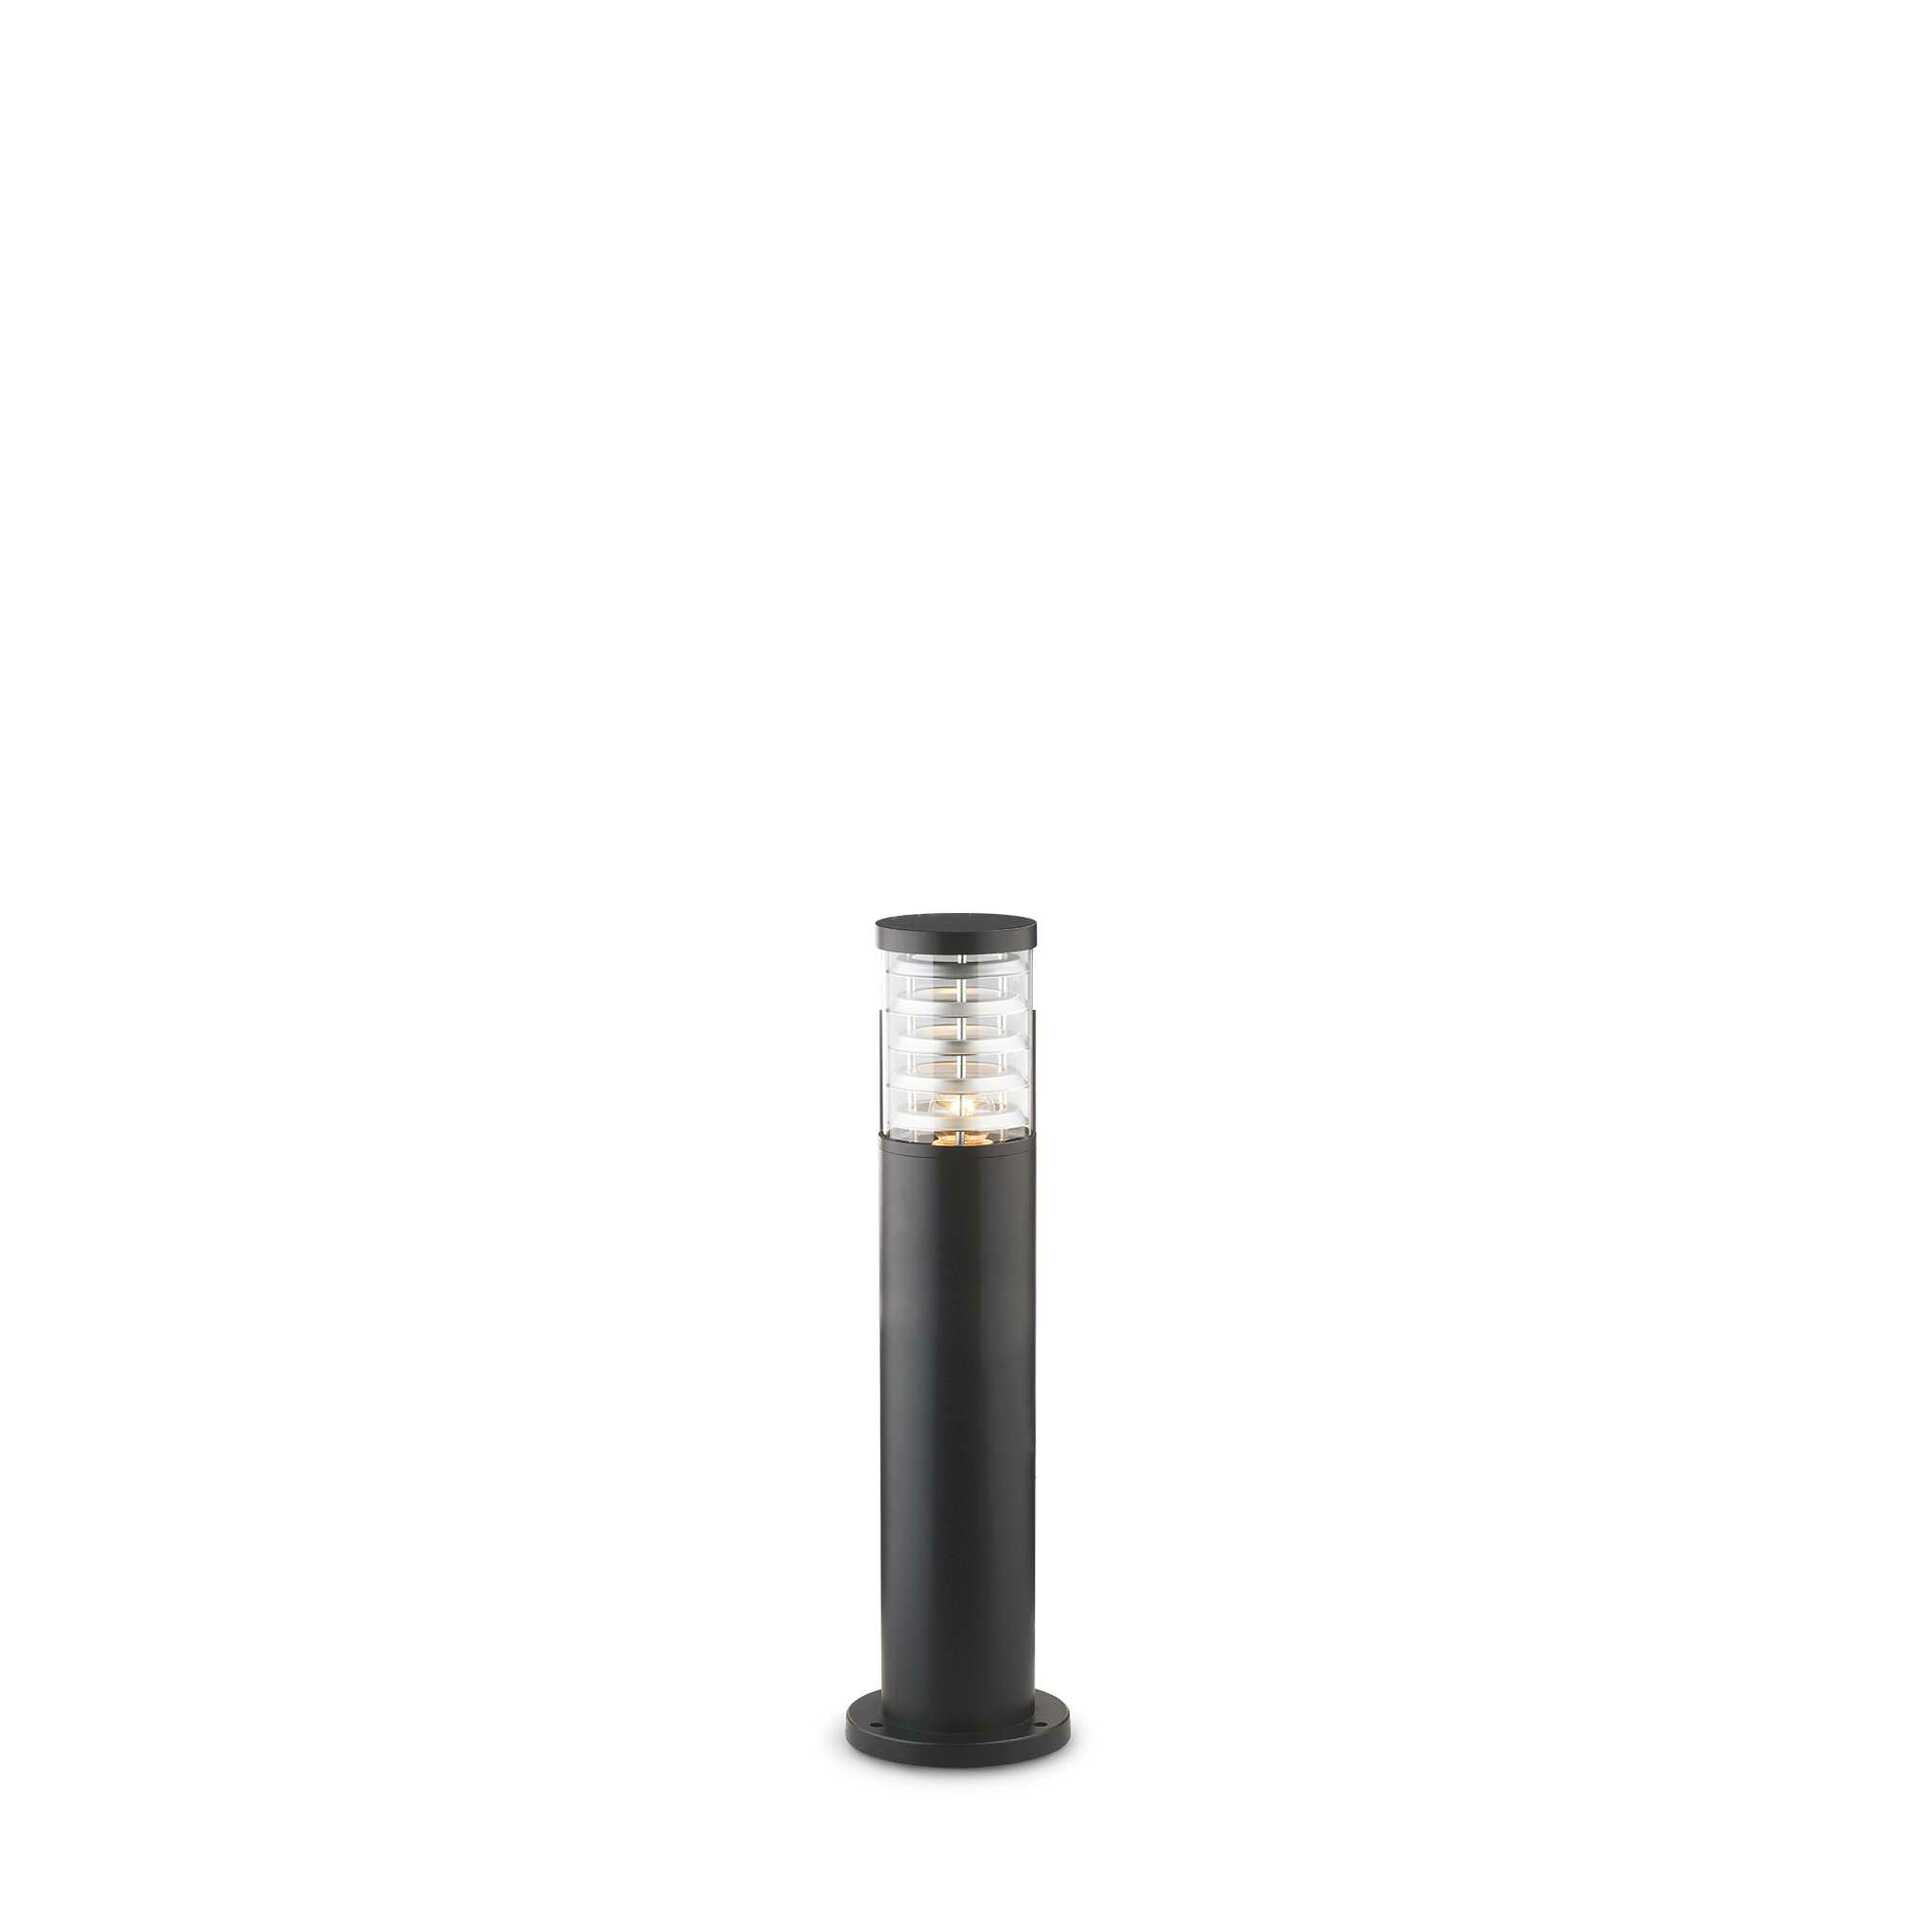 Venkovní sloupkové svítidlo Ideal Lux Tronco PT1 H40 Nero 248295 E27 1x60W IP54 40,5cm černé